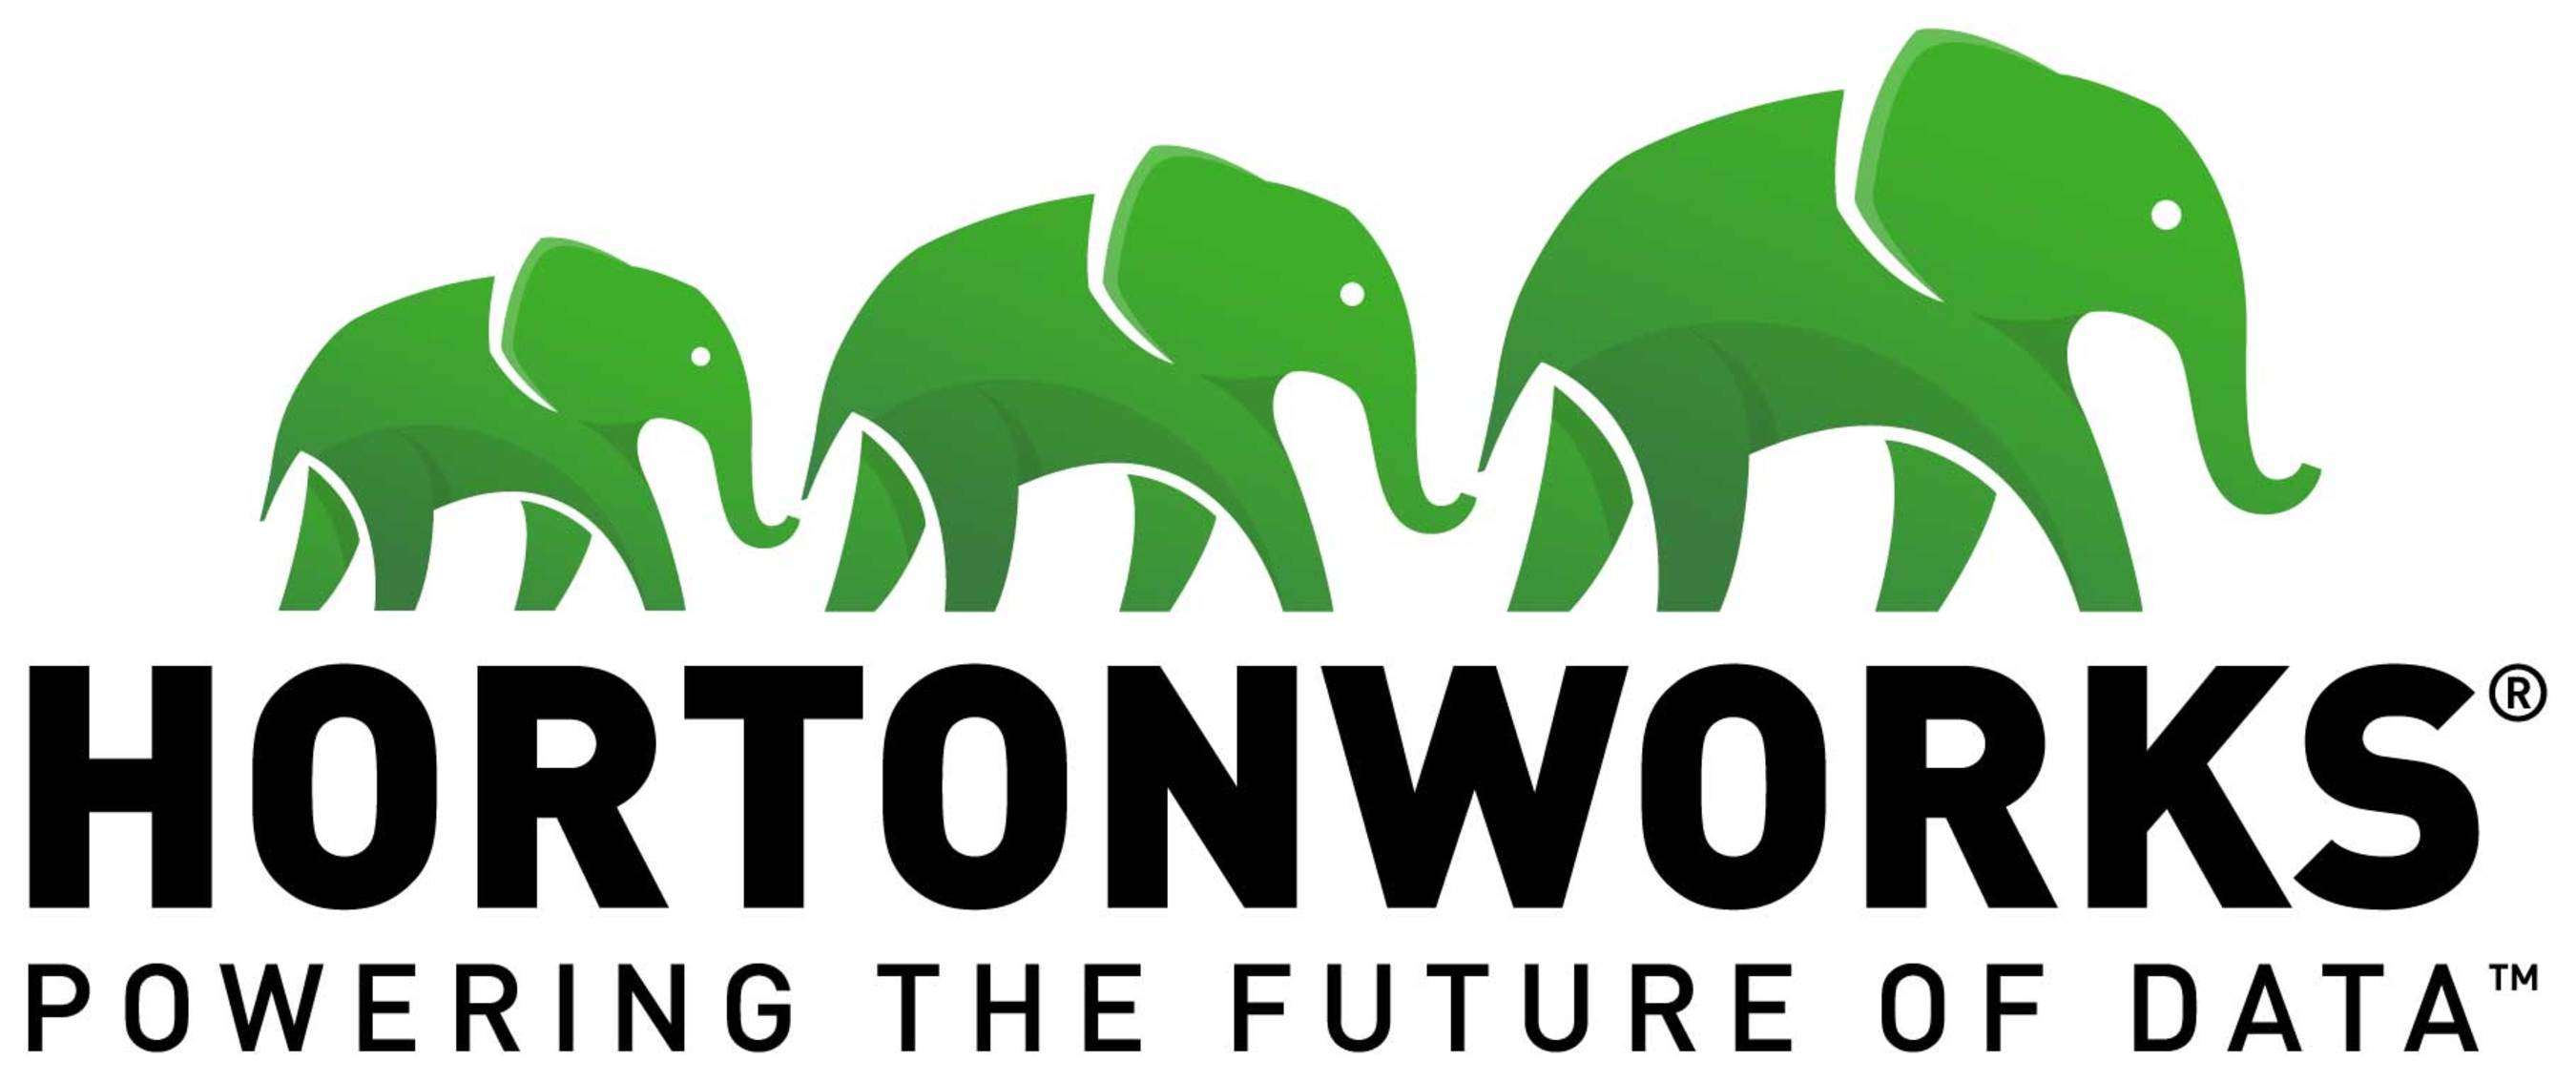 Hortonworks logo.